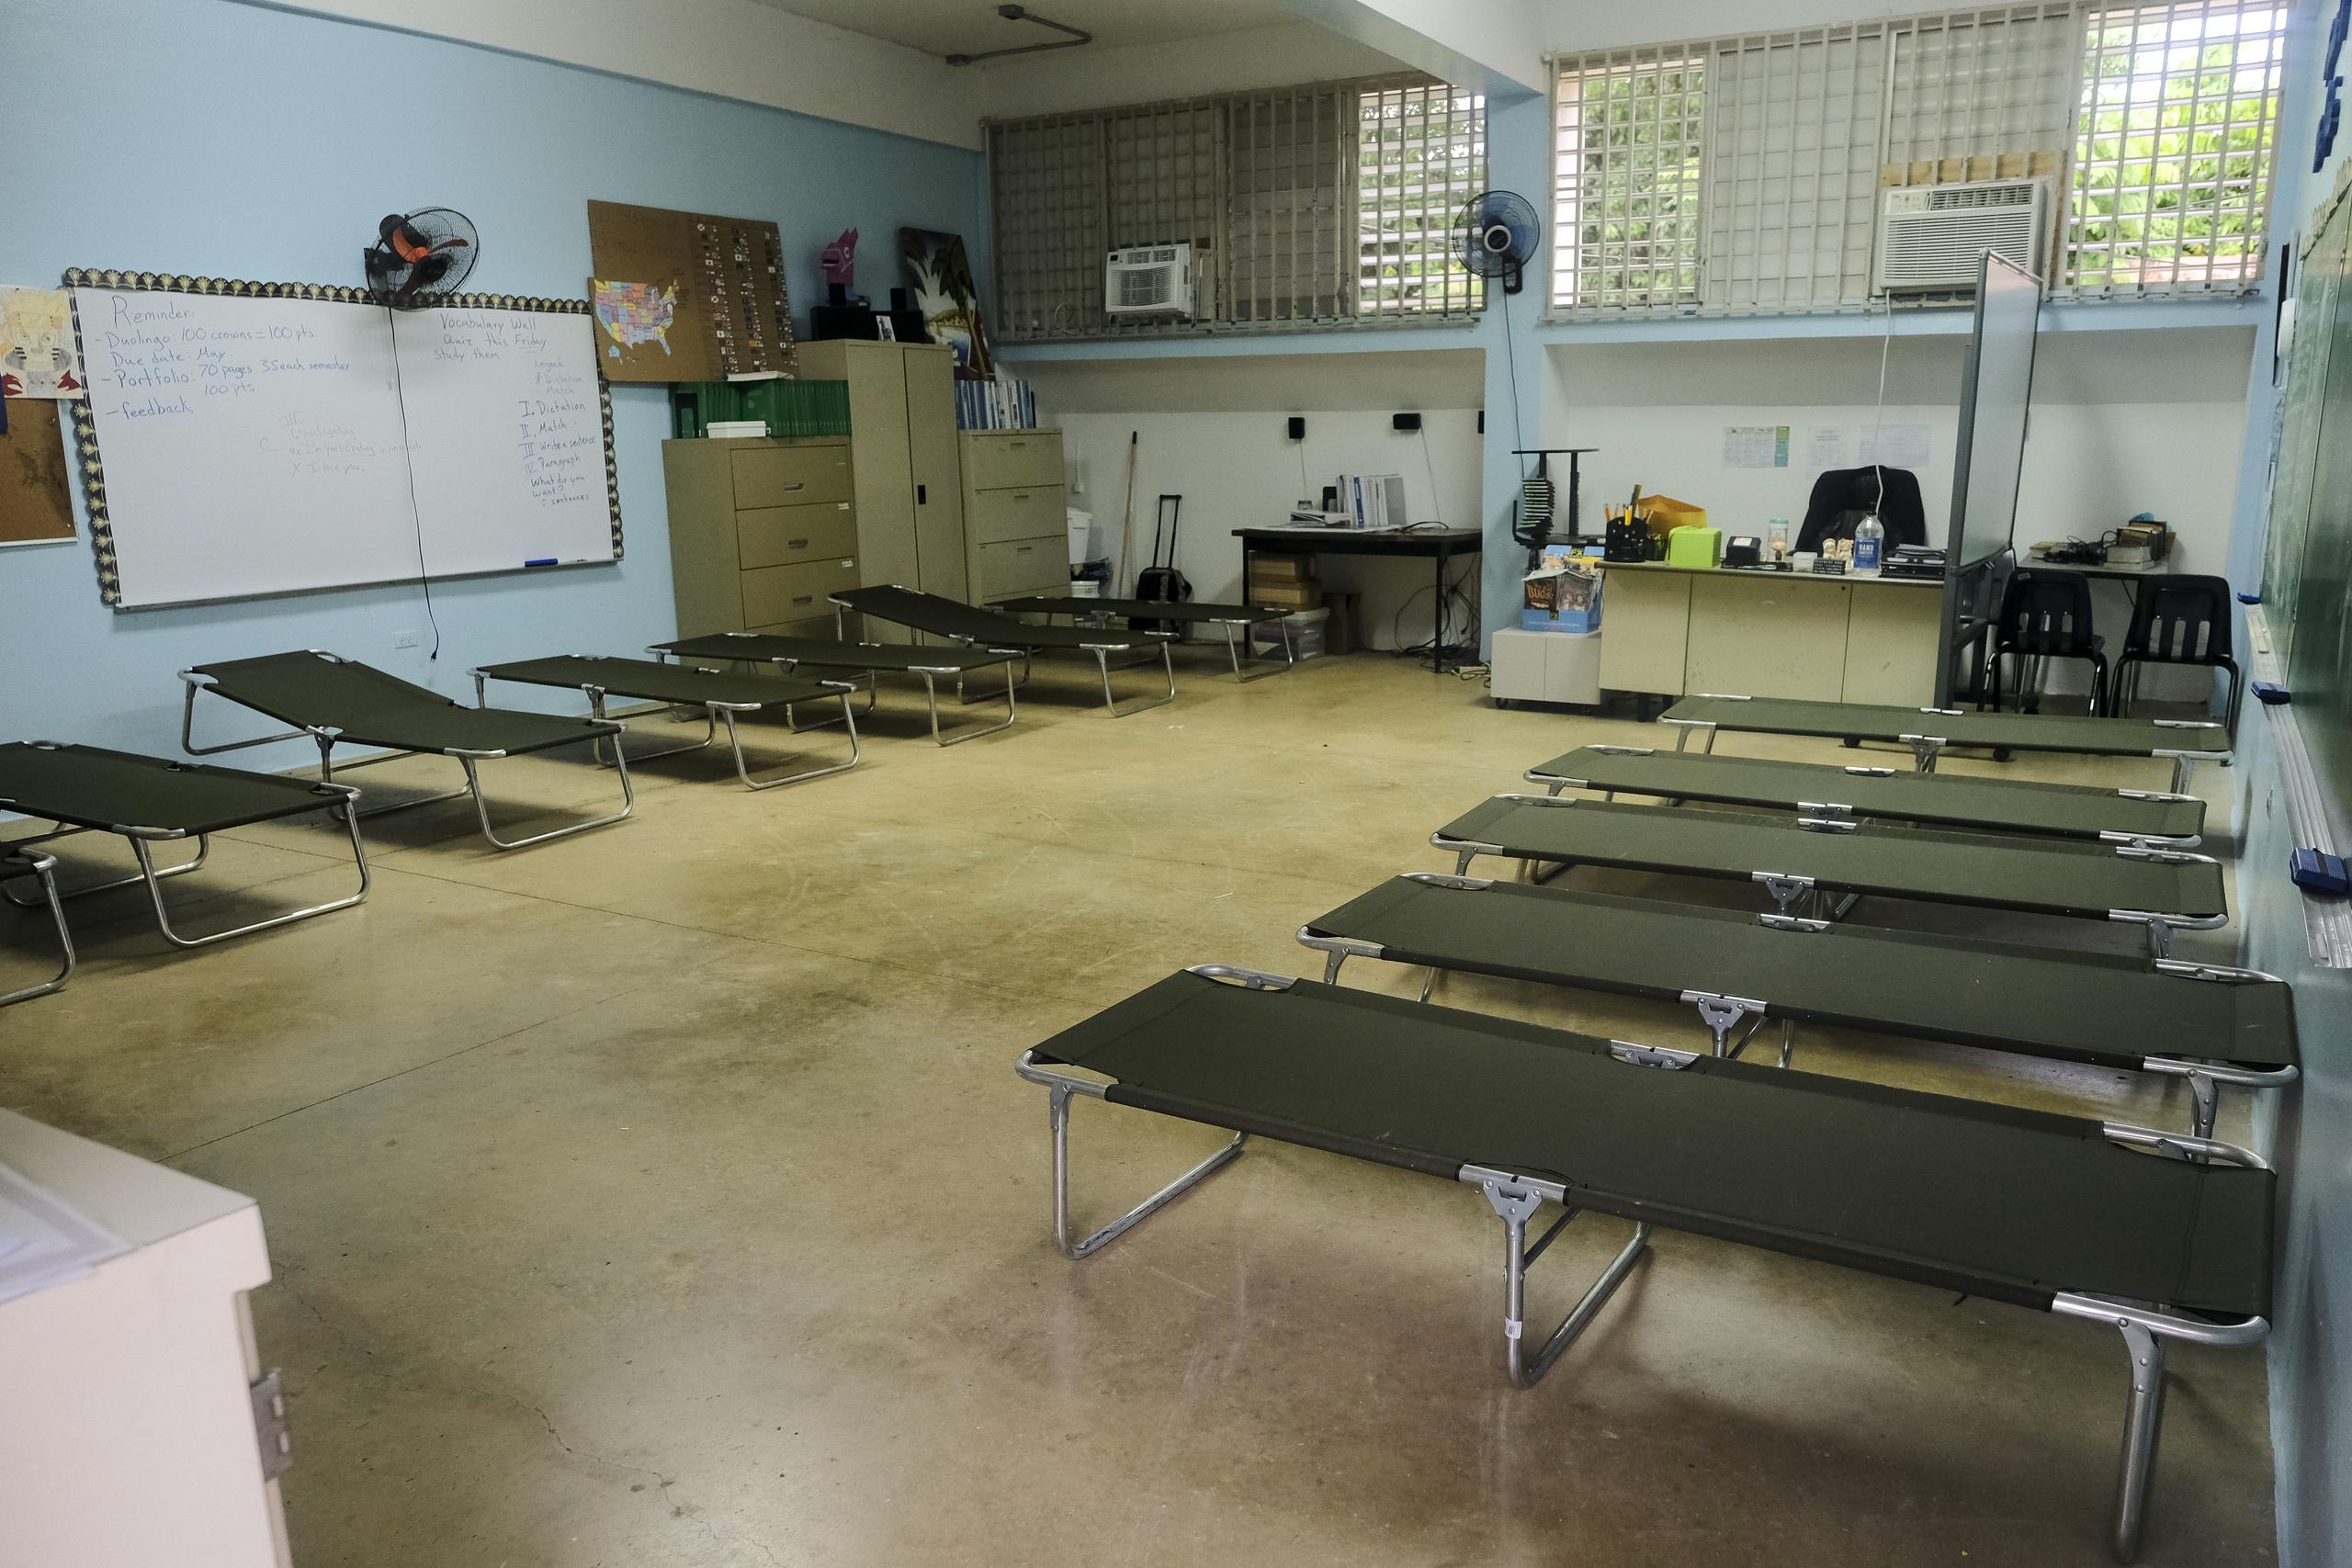 Un salón escolar preparado para recibir a refugiados.